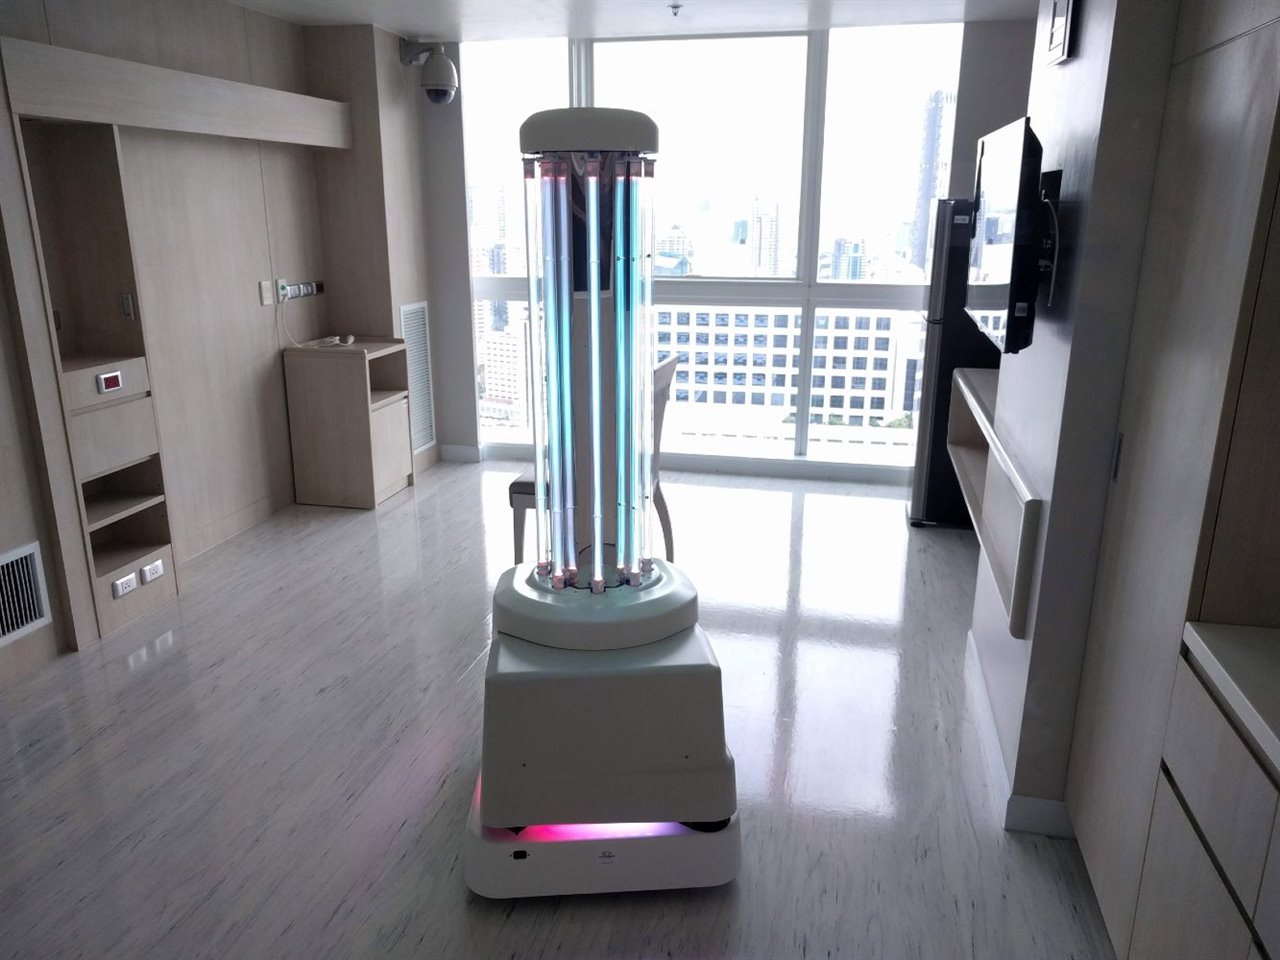 Así son los robots desinfectantes enviados a China por la empresa danesa UVD Robots. 